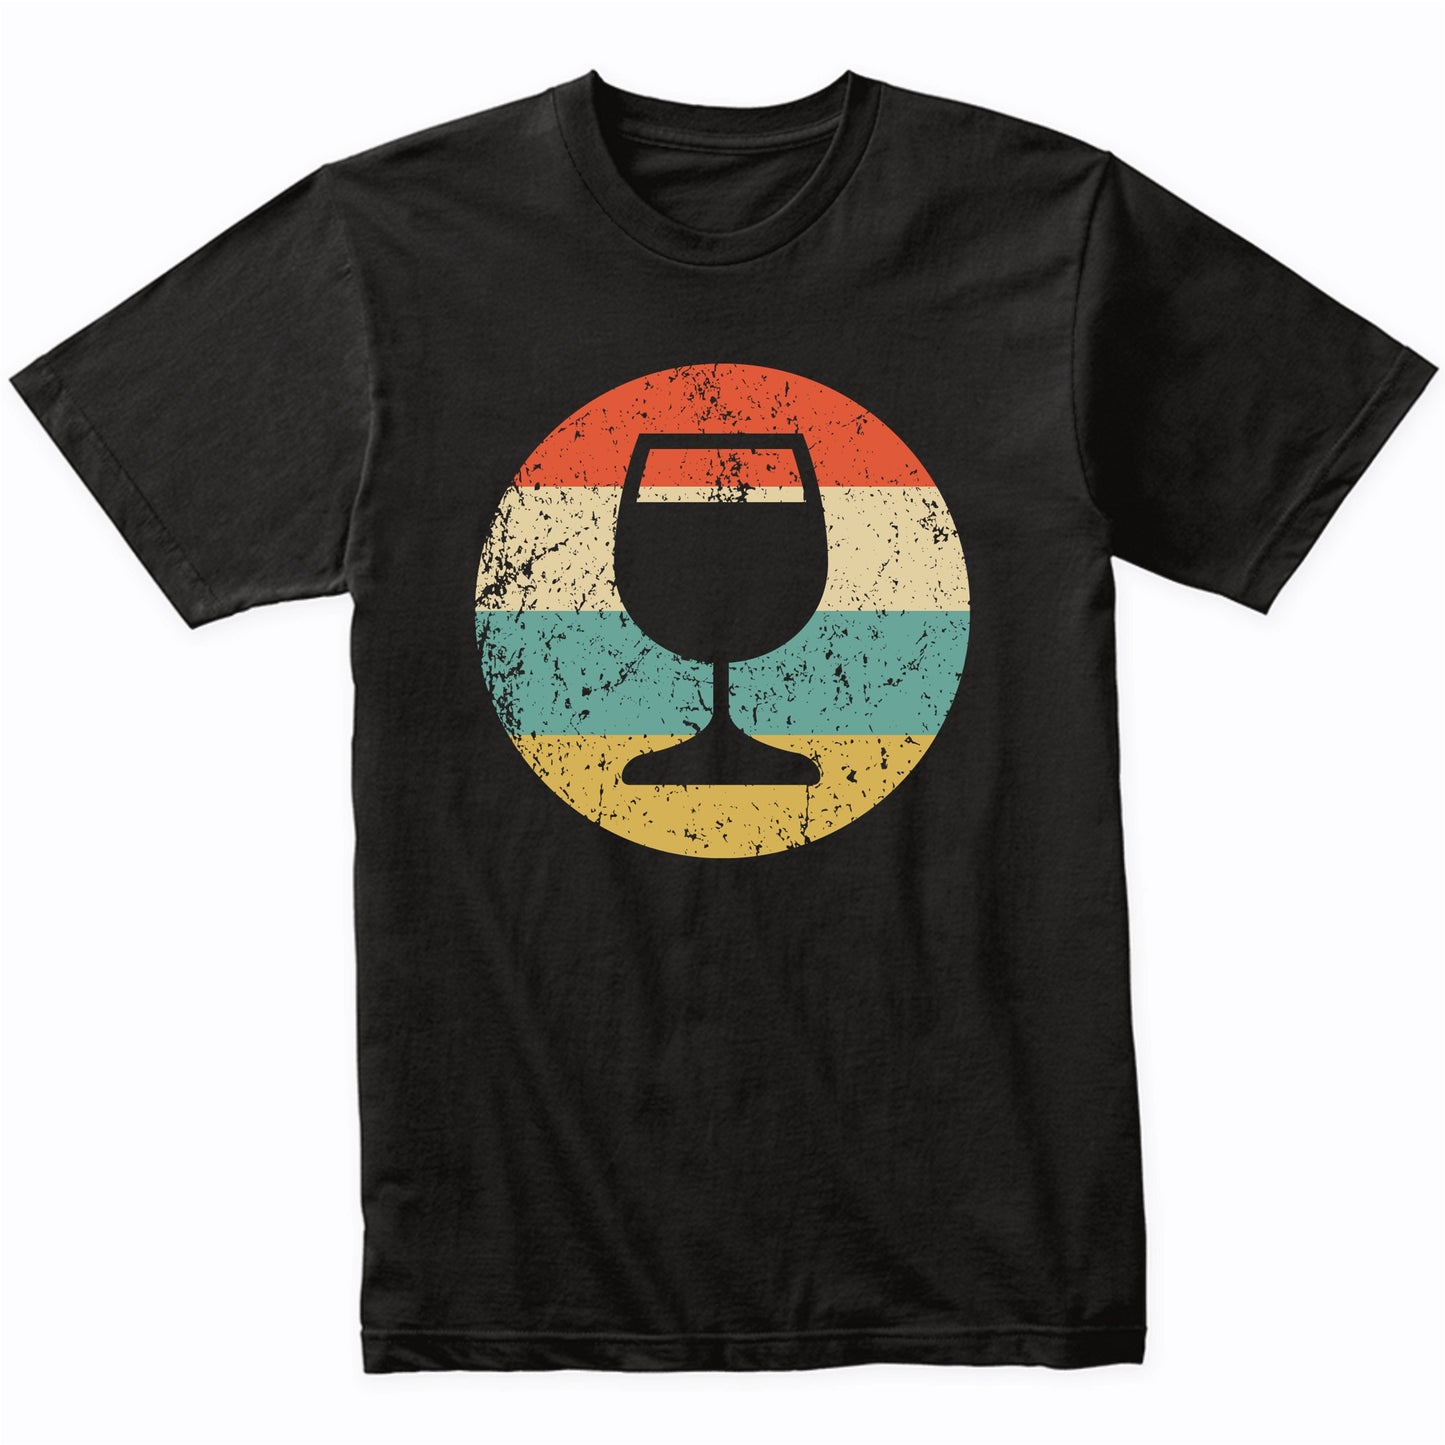 Wine Connoisseur Shirt - Vintage Retro Wine Glass Shirt